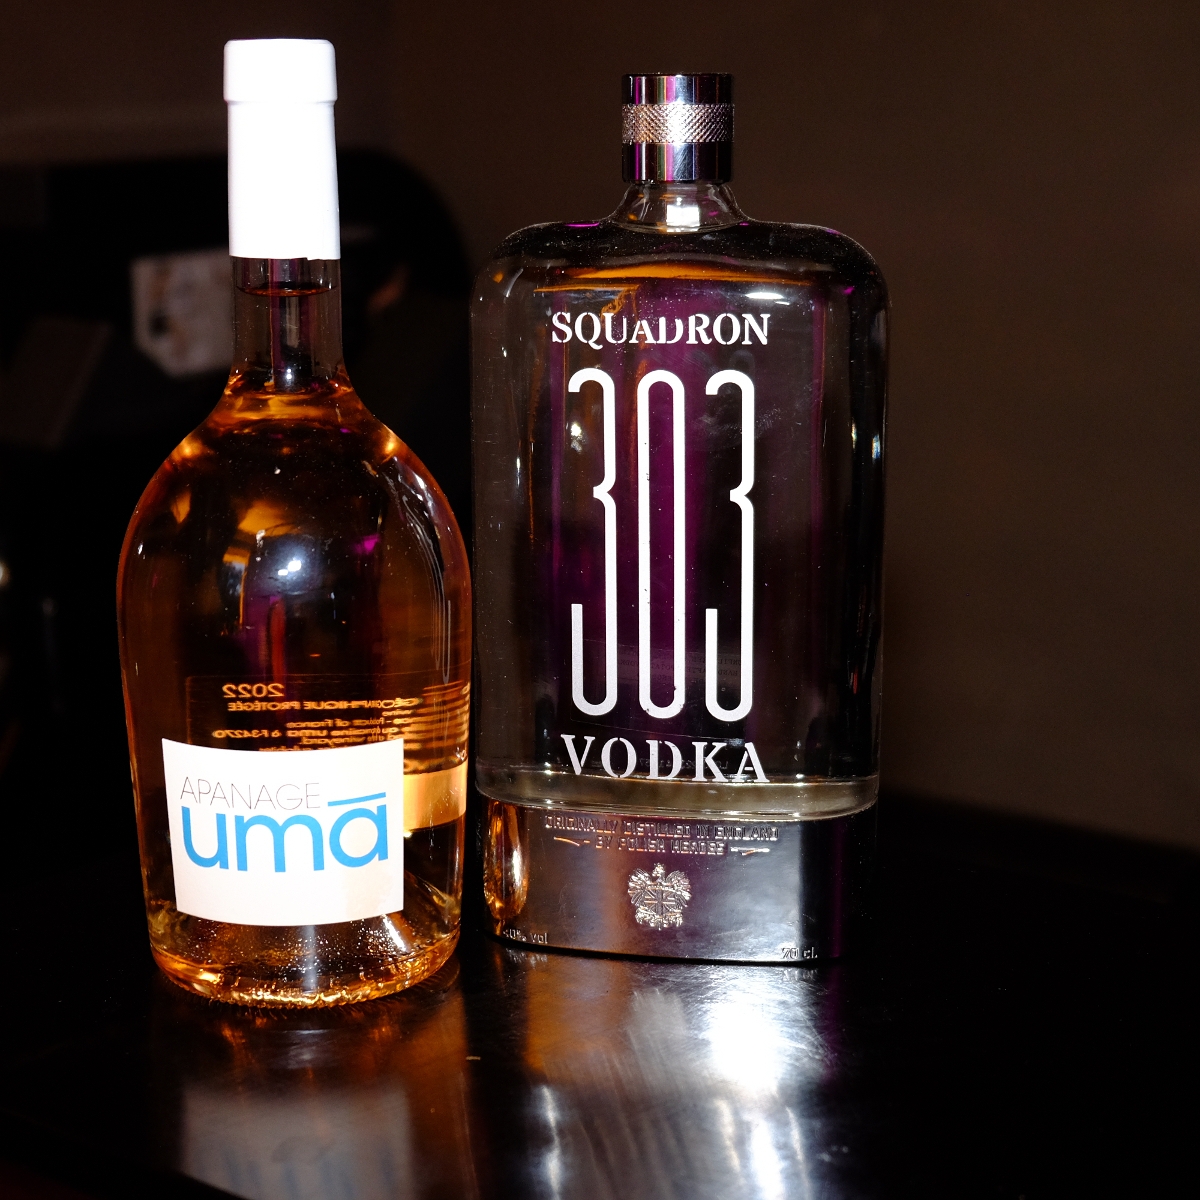 Uma rosé et  vodka  Squadron 303 avec moderation